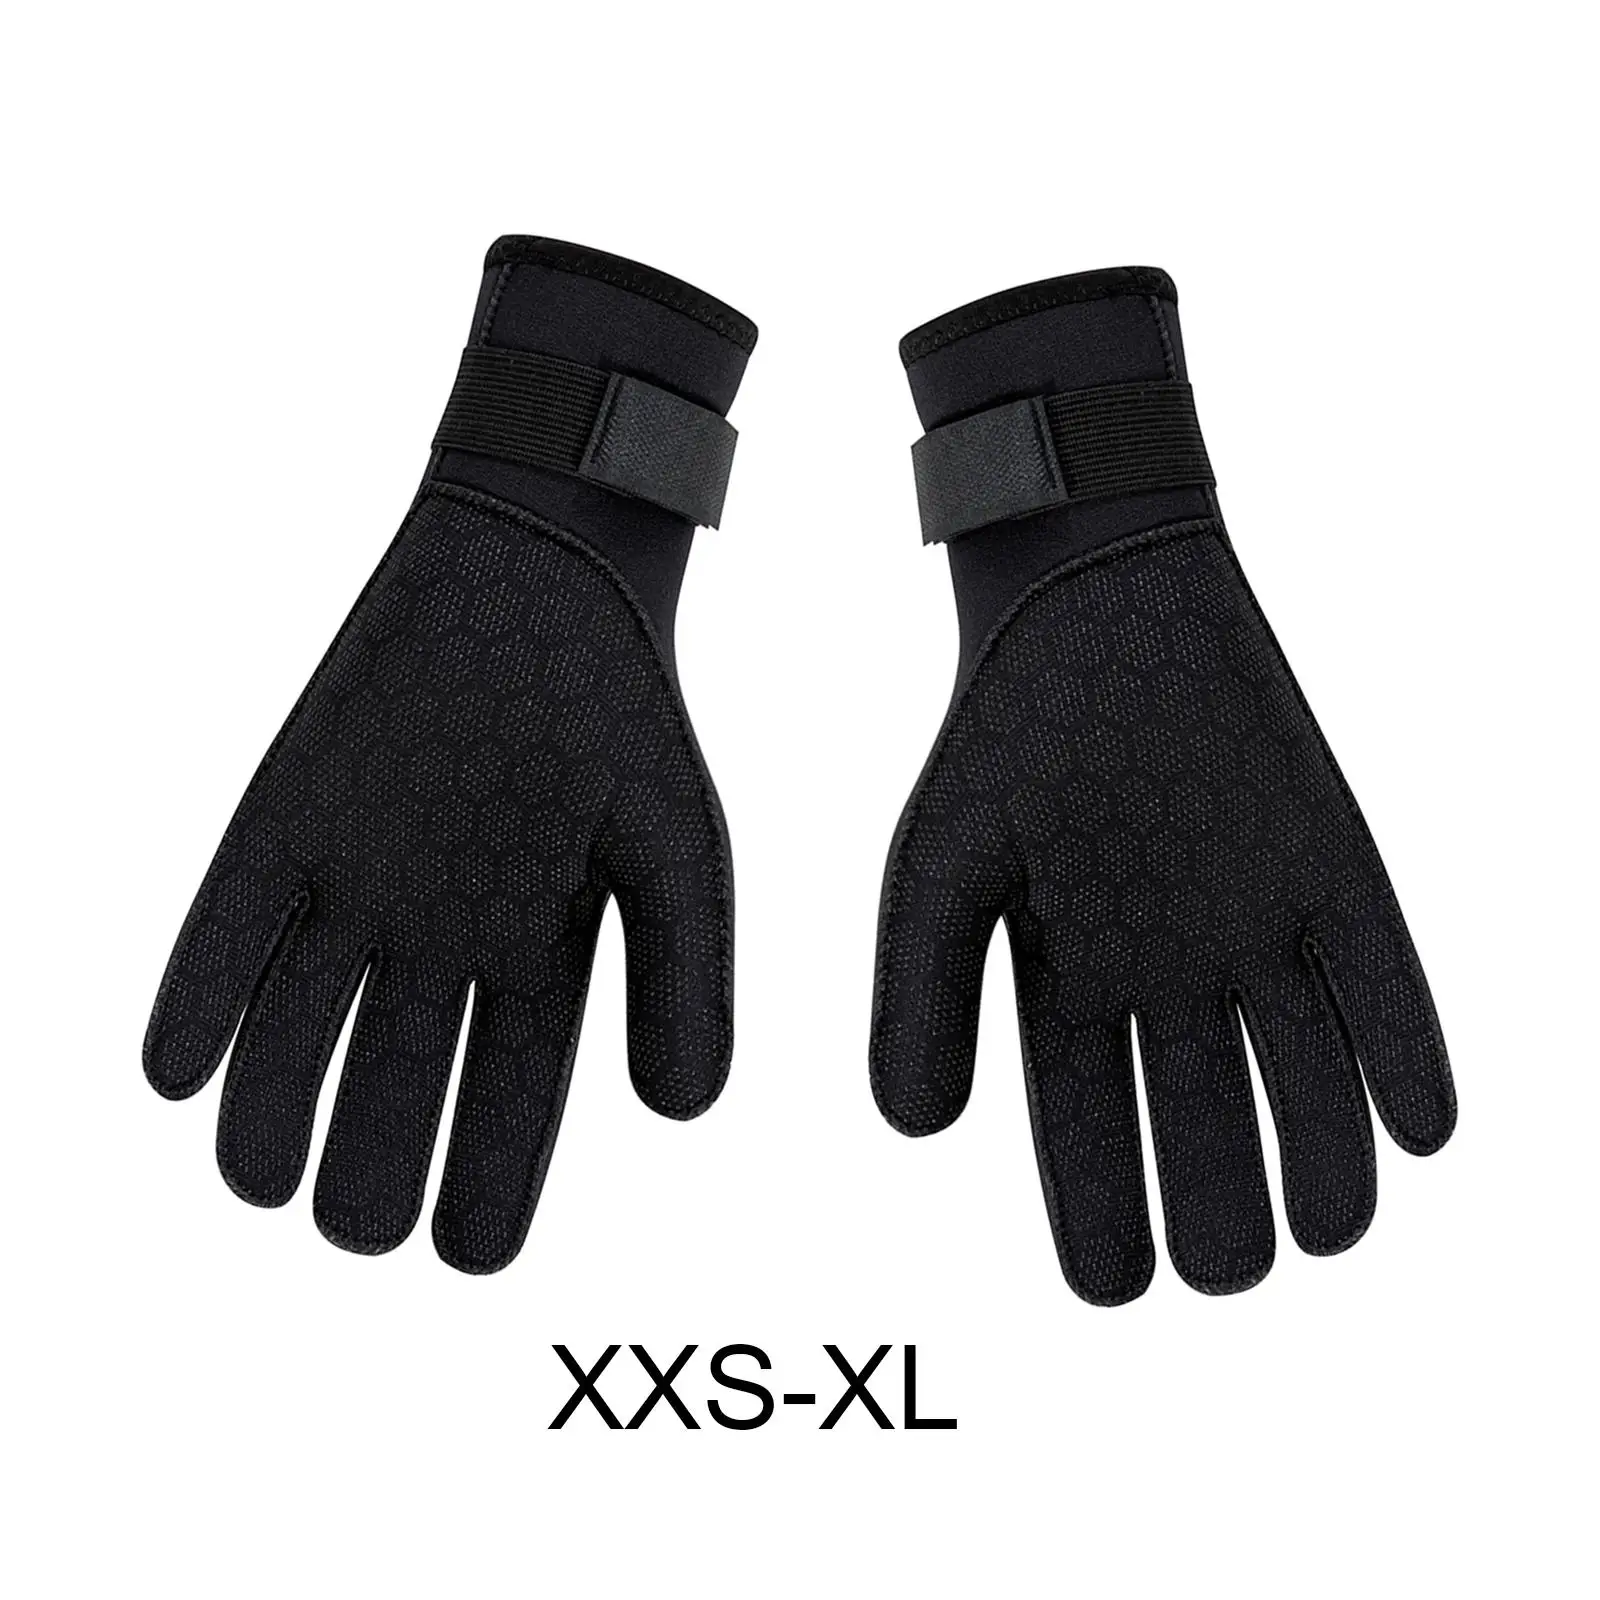 3mm Neoprene Gloves Antiskid Wetsuit Gloves for Men Women Snorkeling Fishing